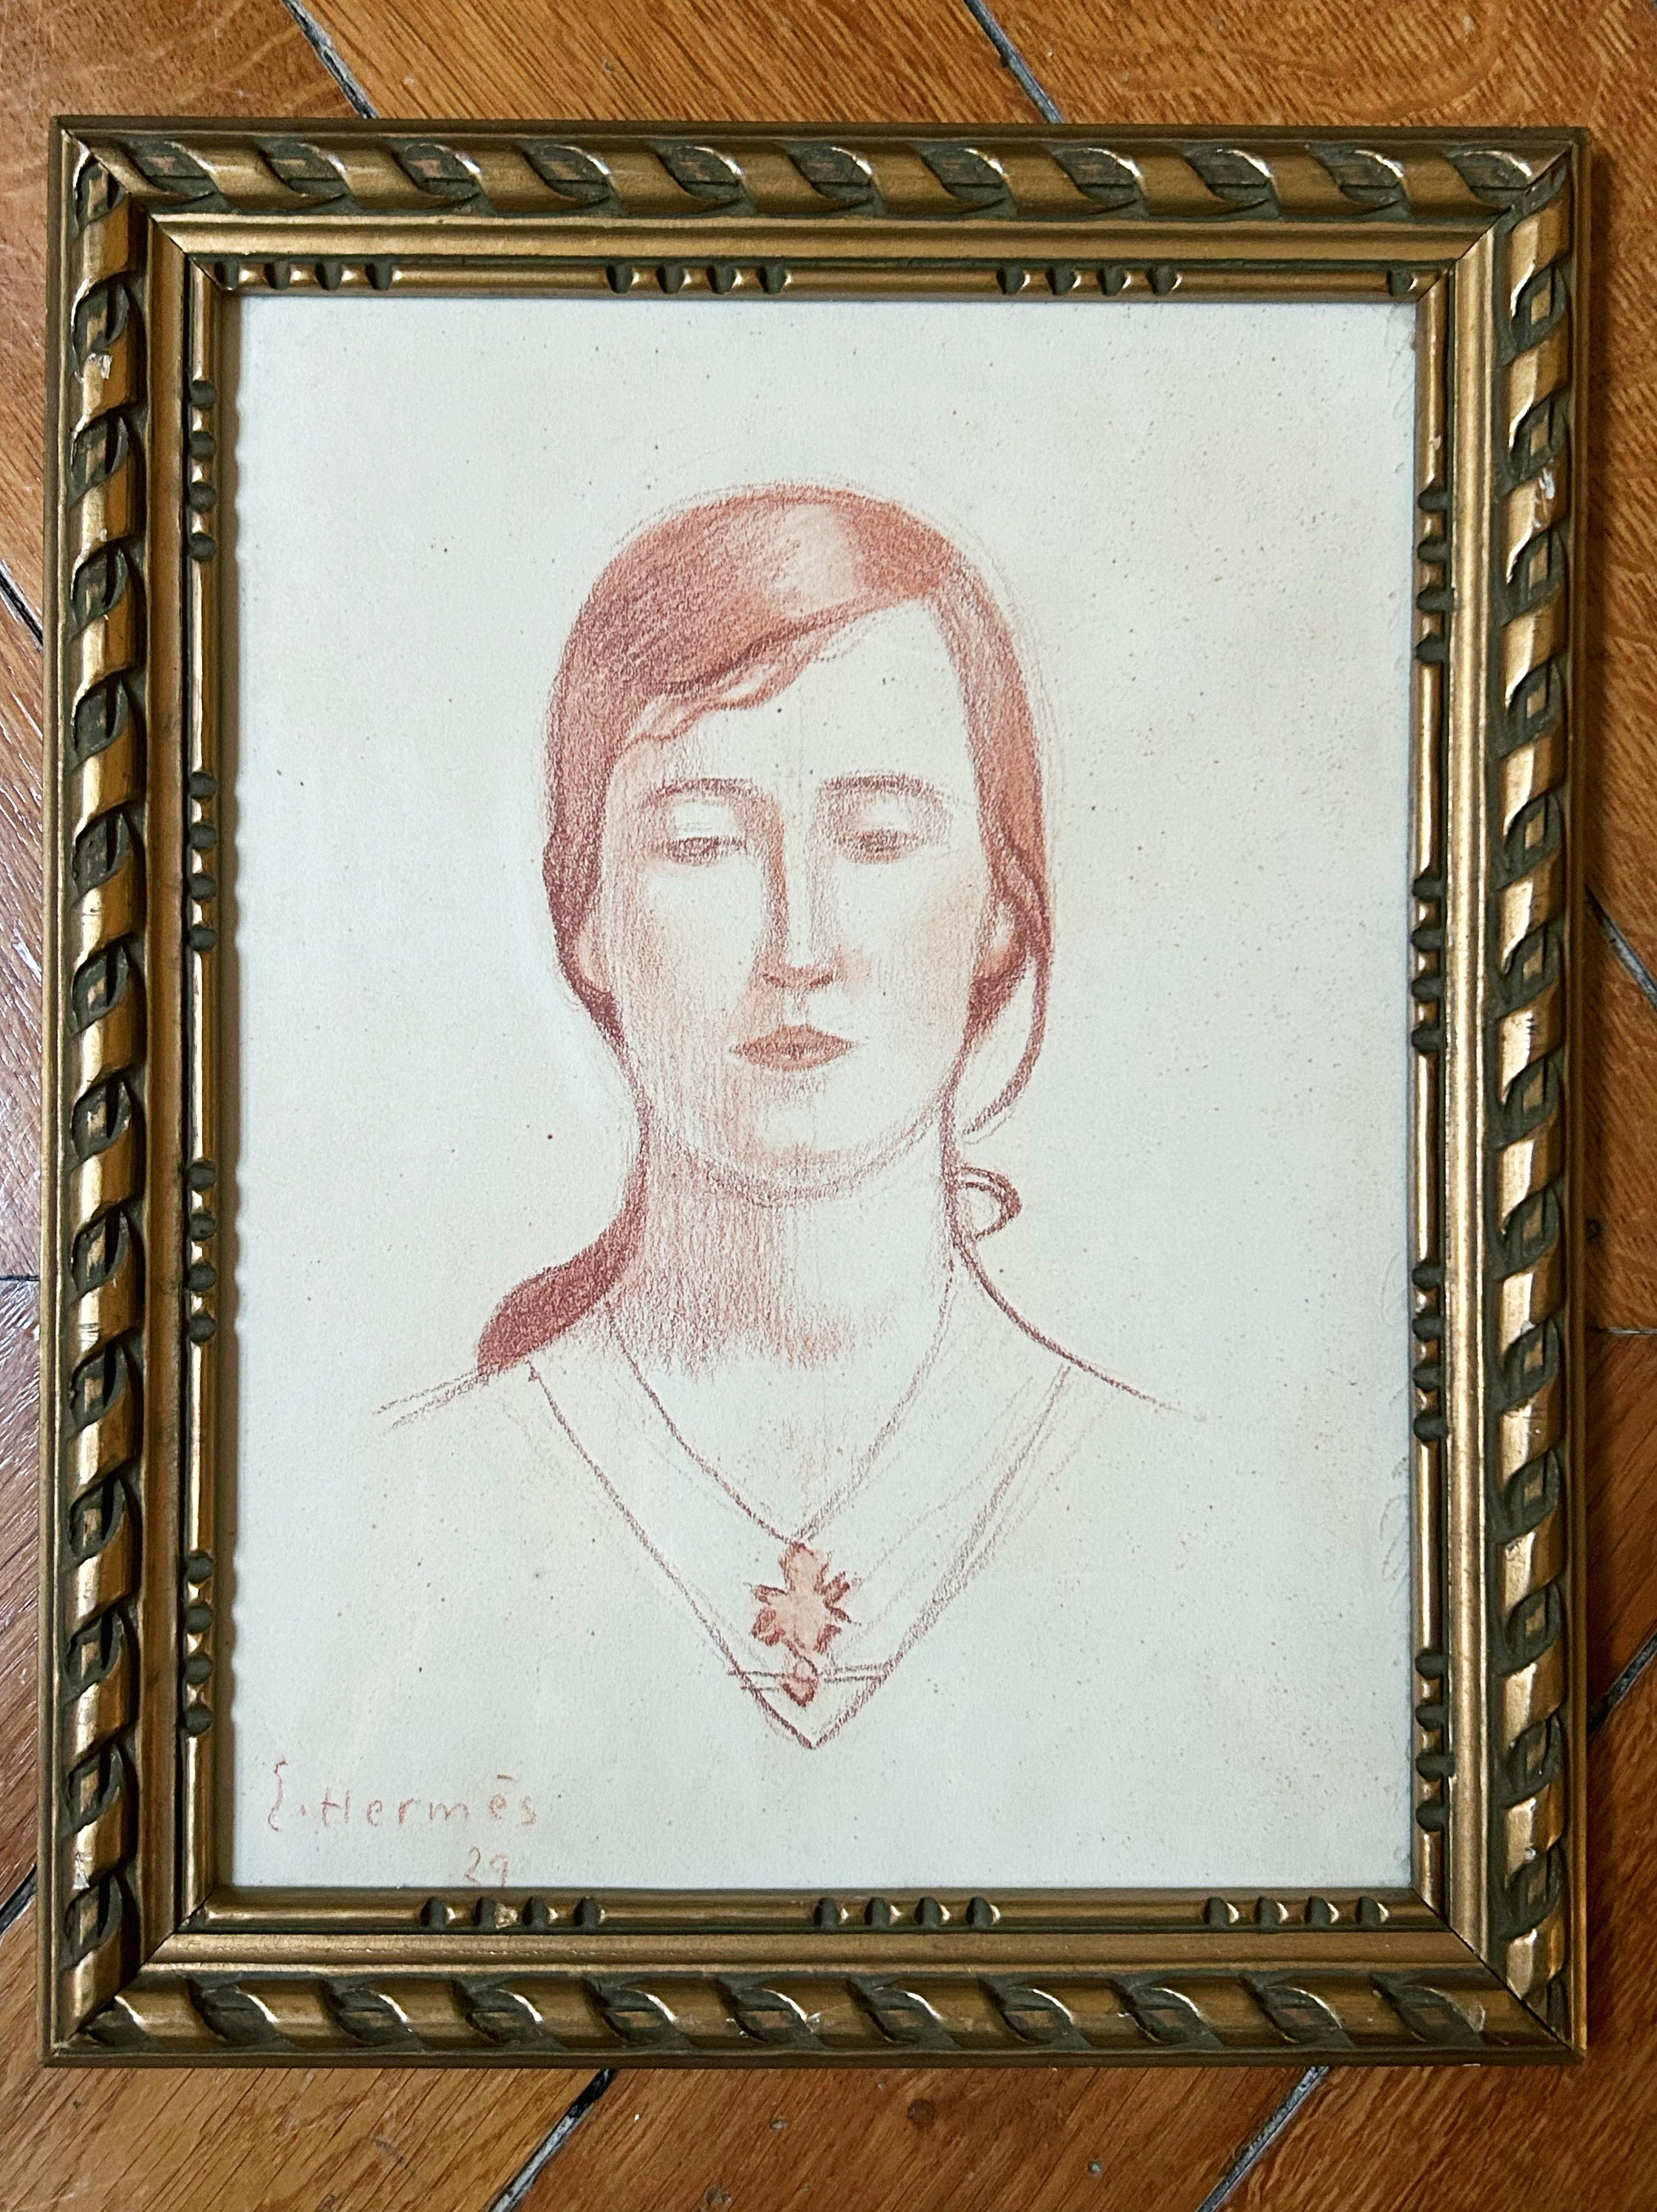 Portrait d'une femme, 1929, craie rouge sur papier - Art de Erich Hermes